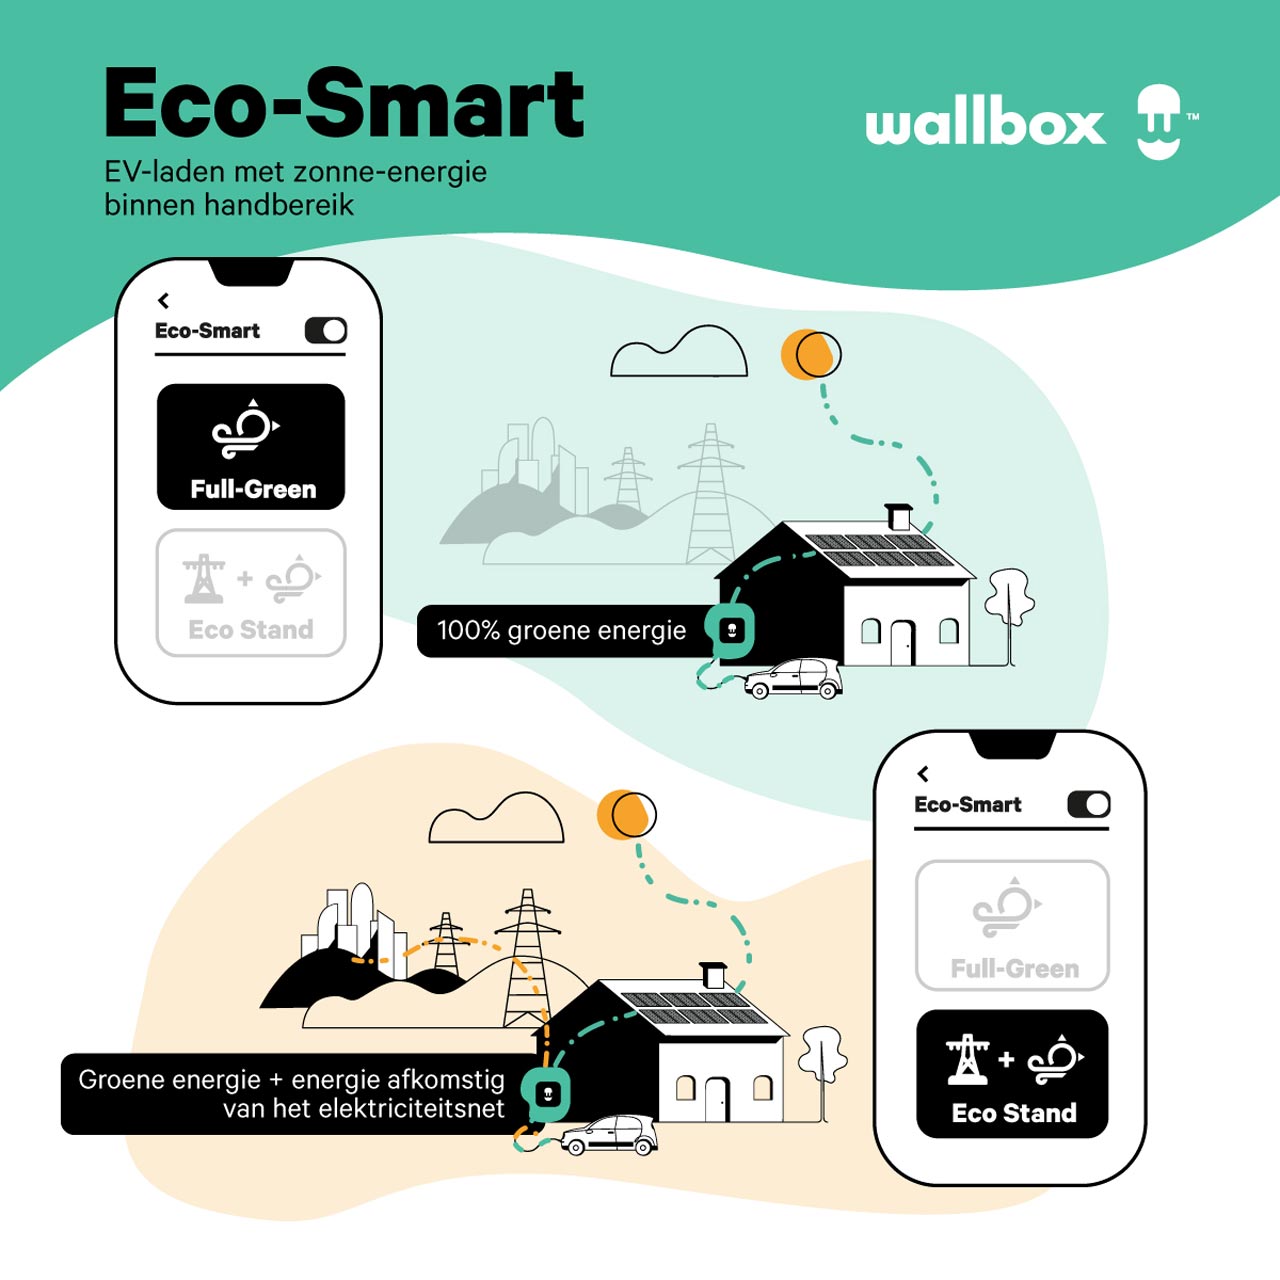 Wallbox_ecosmart-groene-energie